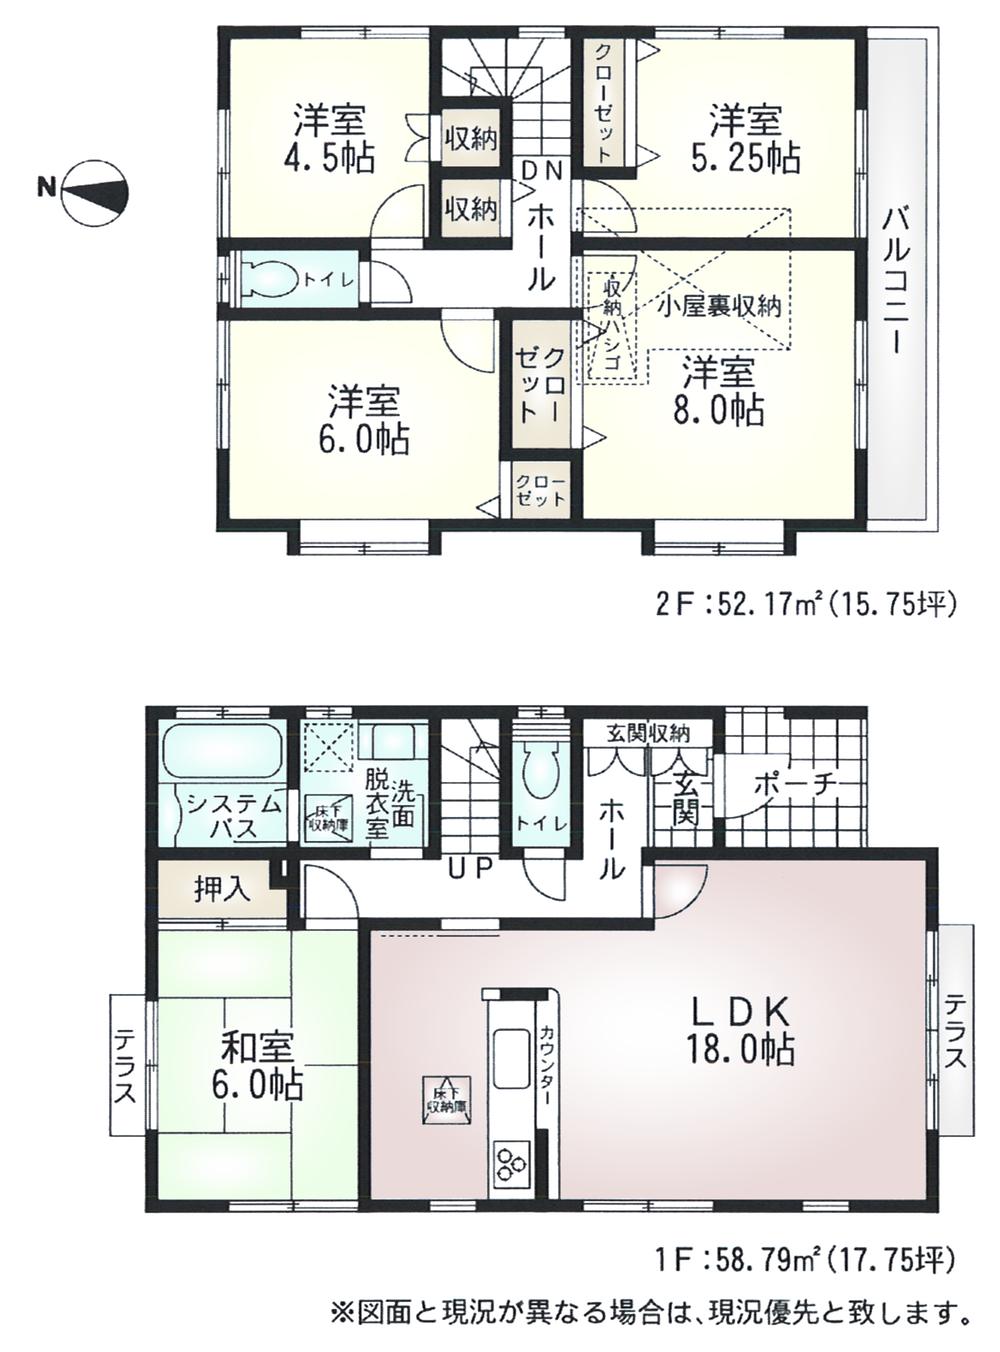 Floor plan. 36.5 million yen, 5LDK, Land area 195.32 sq m , Building area 110.96 sq m